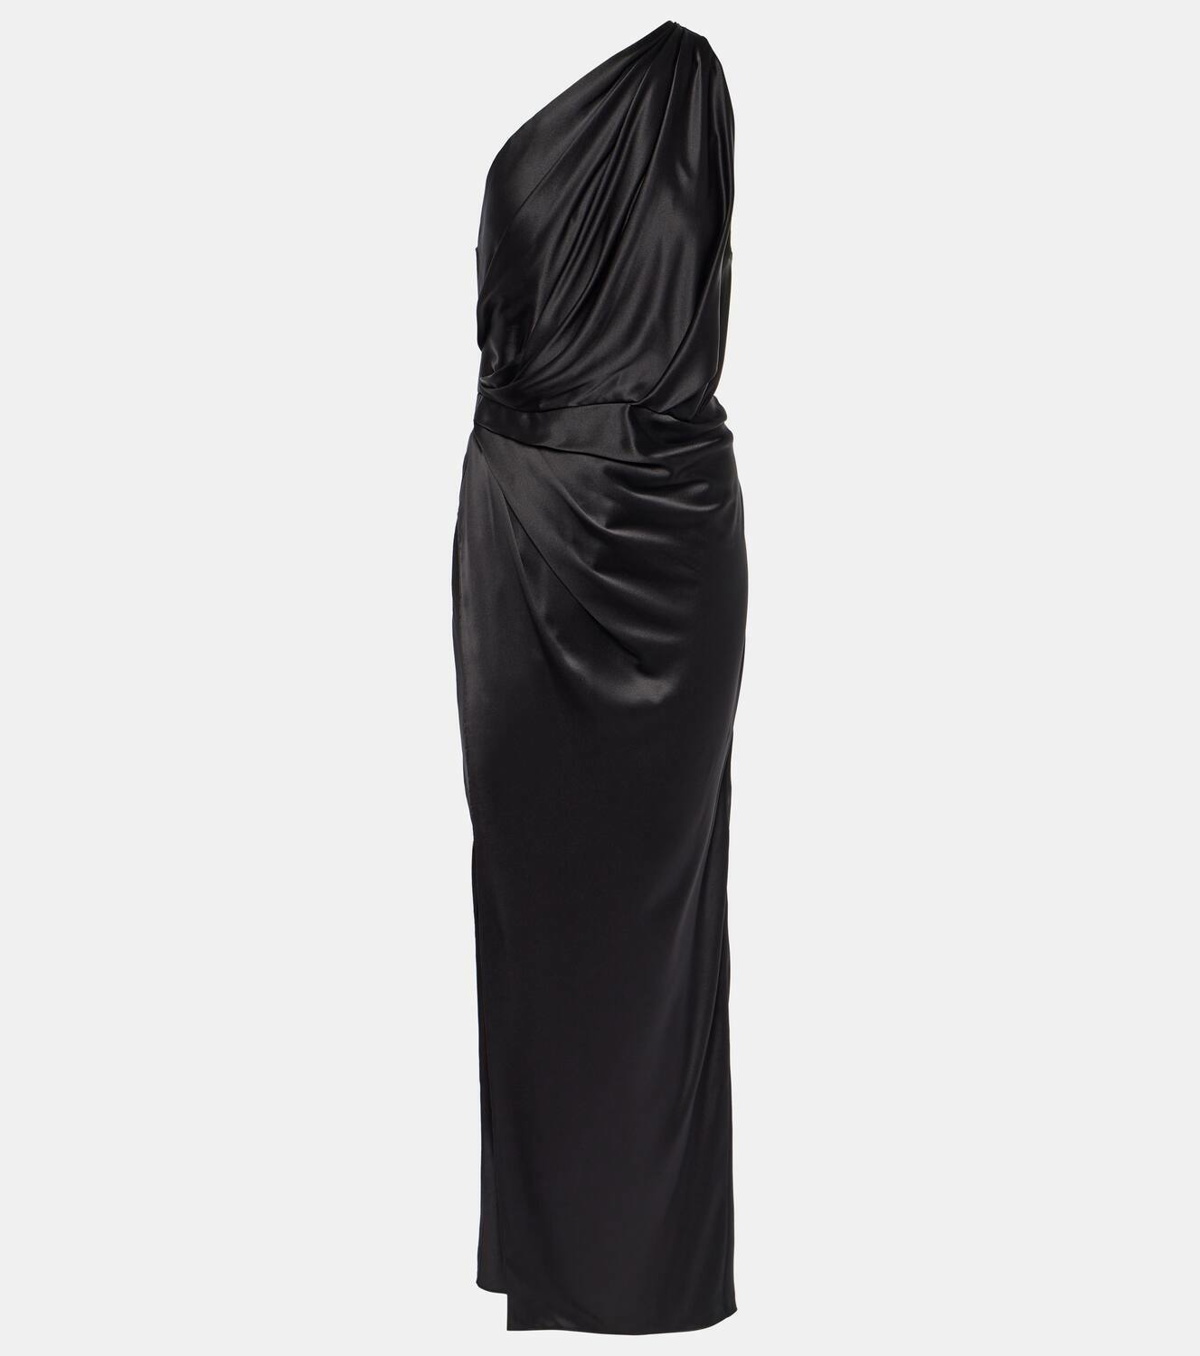 Silk satin gown in black - The Sei